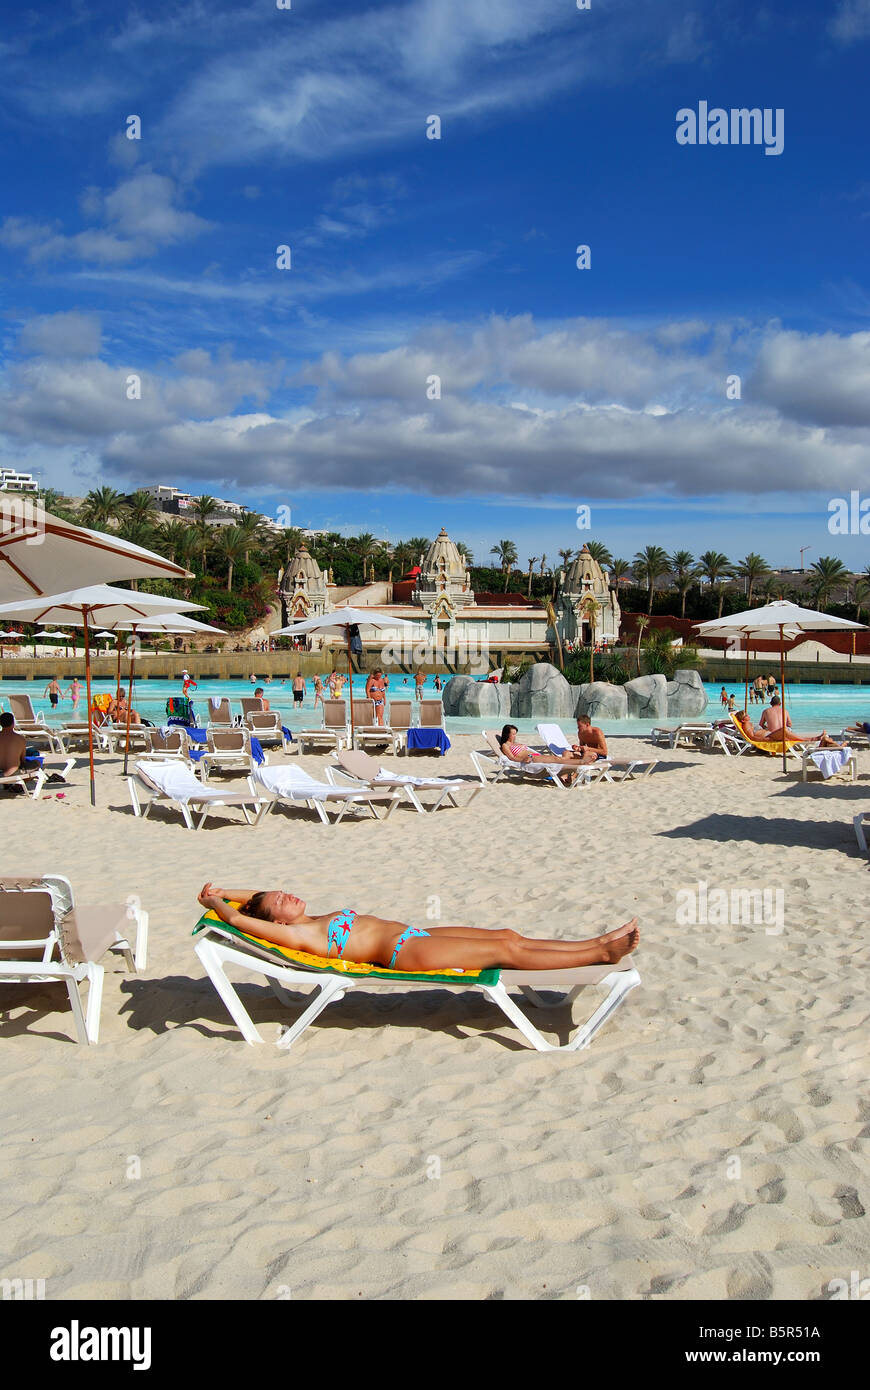 Palazzo d'onda e la laguna, Siam Park Water Kingdom Theme Park, Costa Adeje, Tenerife, Isole Canarie, Spagna Foto Stock